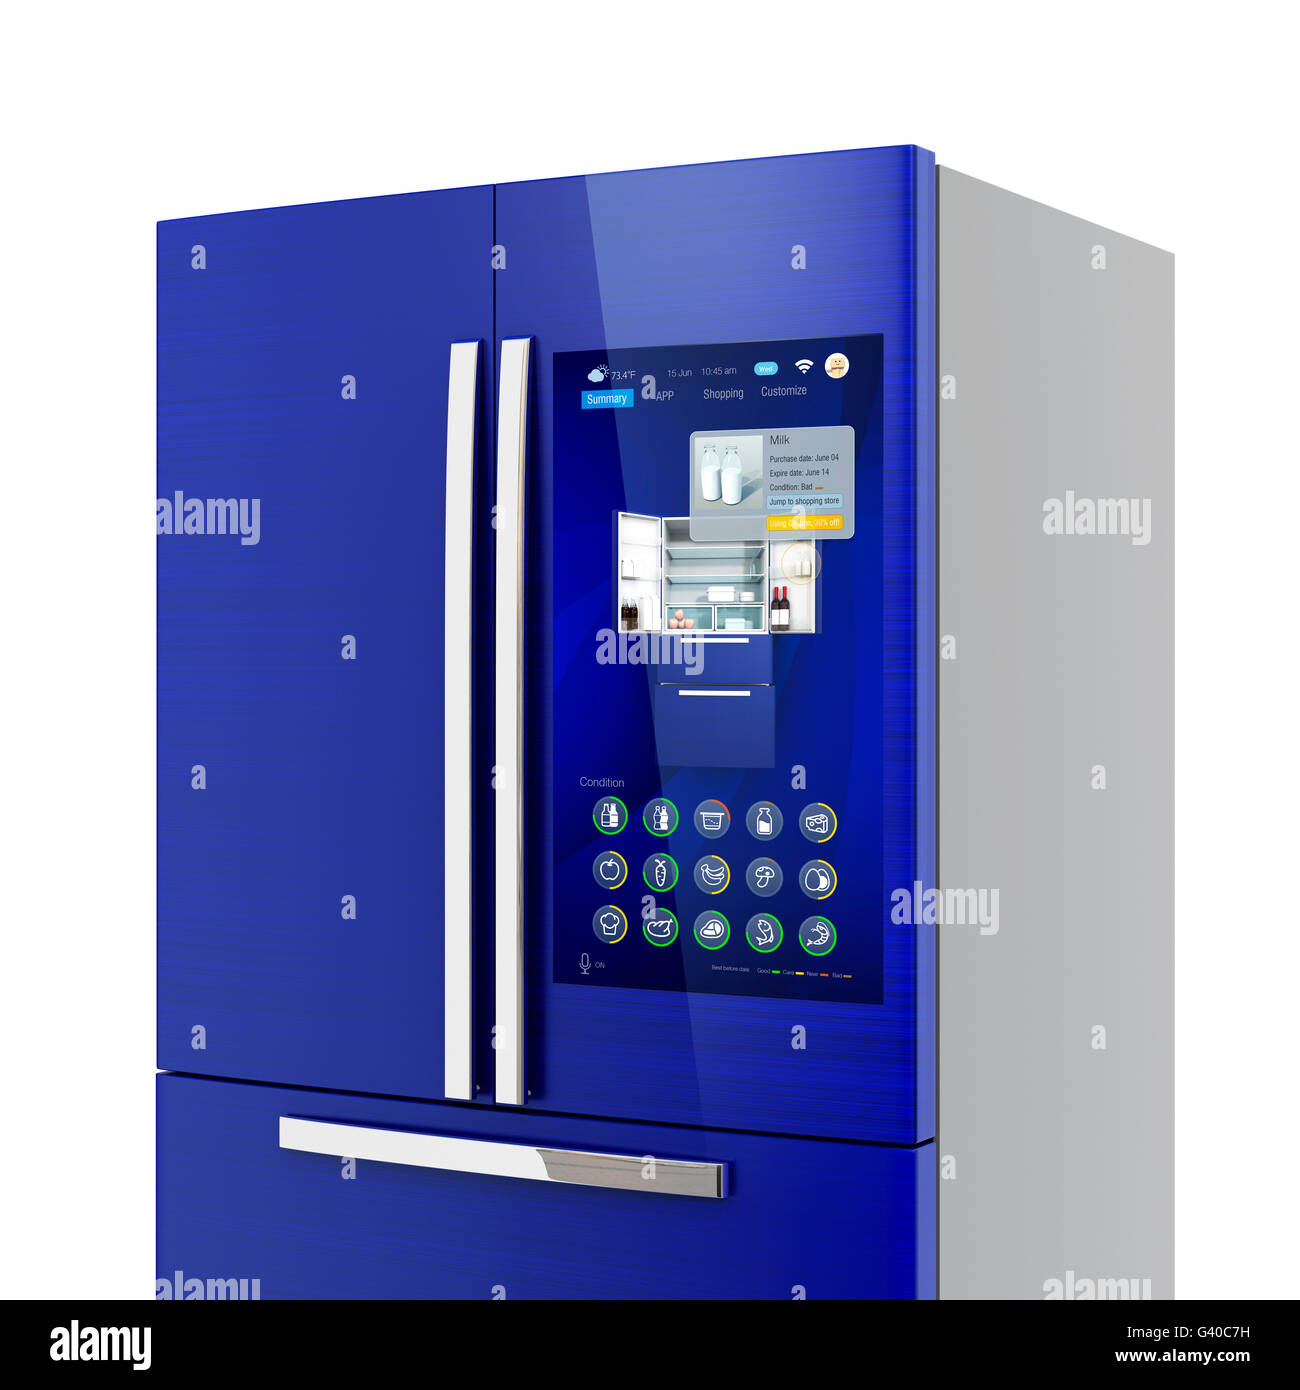 Smart frigorifero concetto. L'utente può gestire il cibo o acquistare uno nuovo da interfaccia touch-screen. Il rendering 3D'immagine. Foto Stock